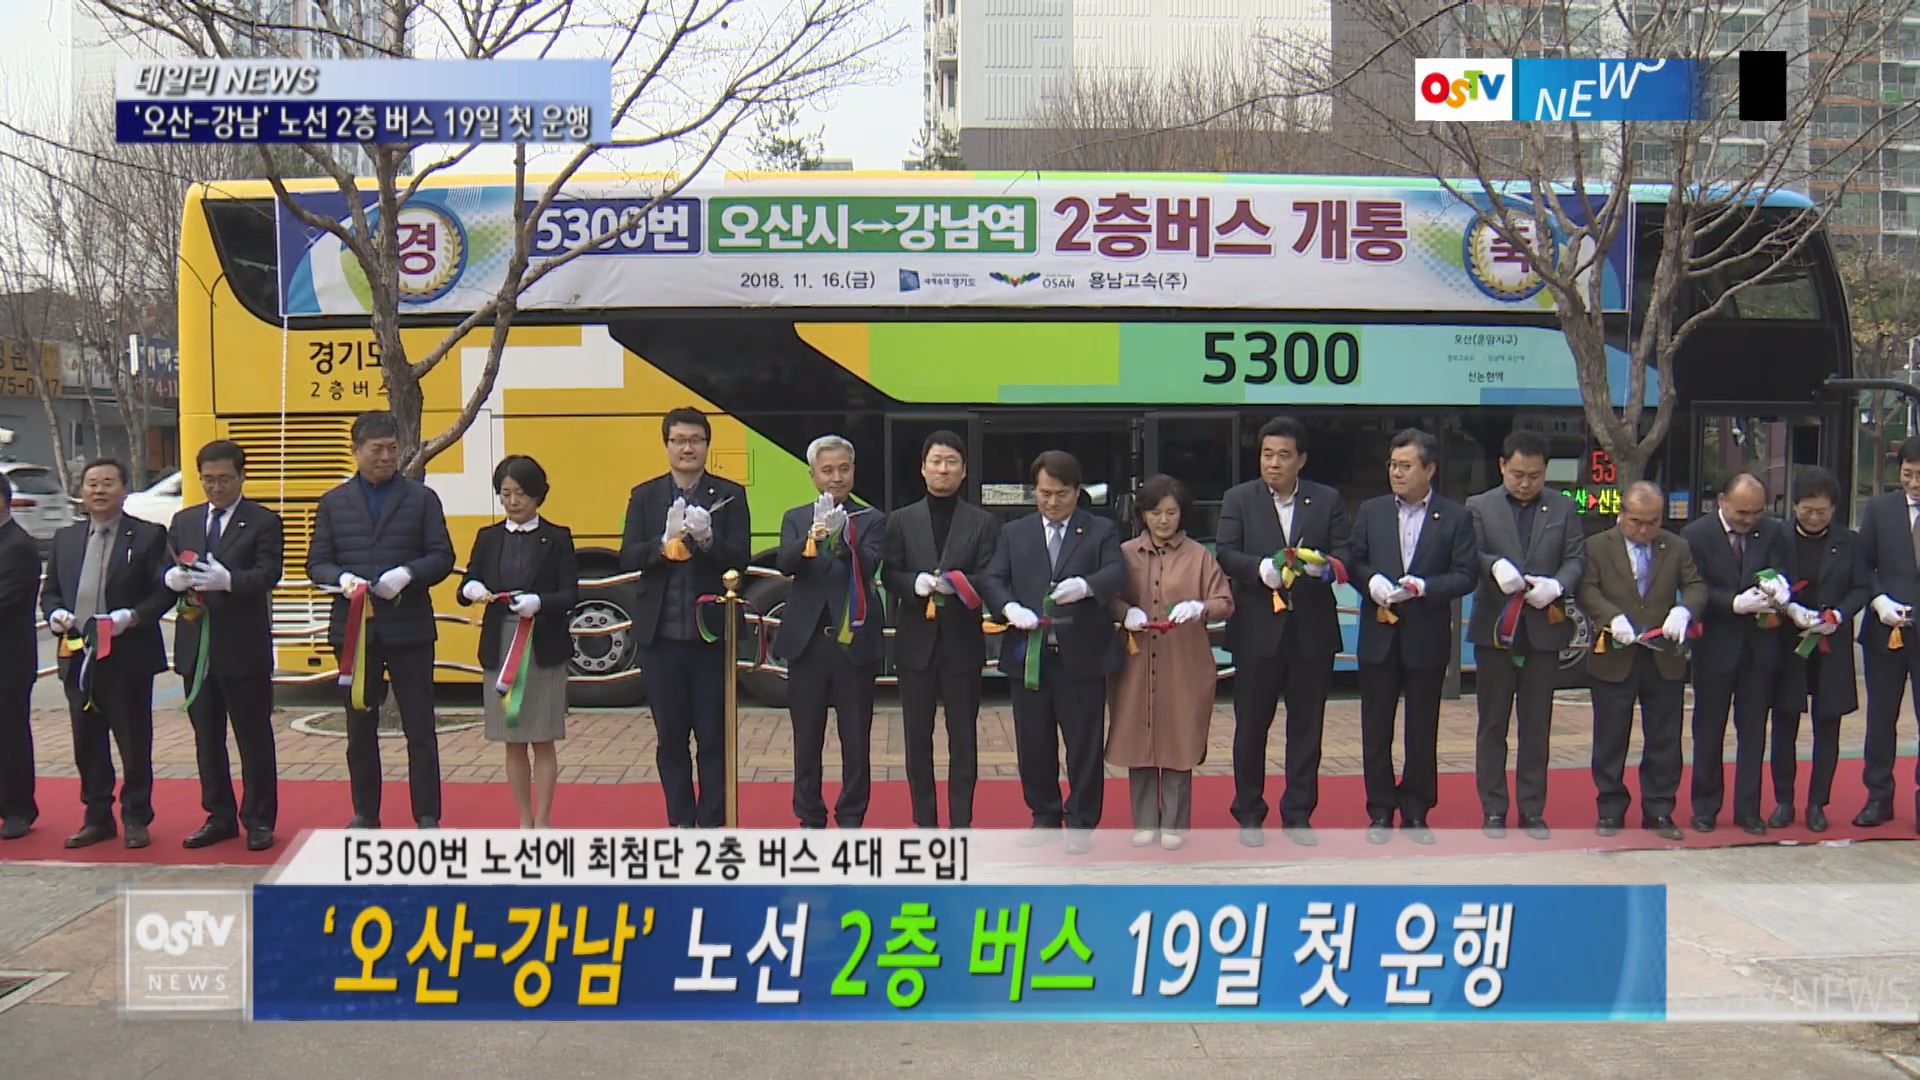 ‘오산-강남’ 노선 2층 버스 19일 첫 운행